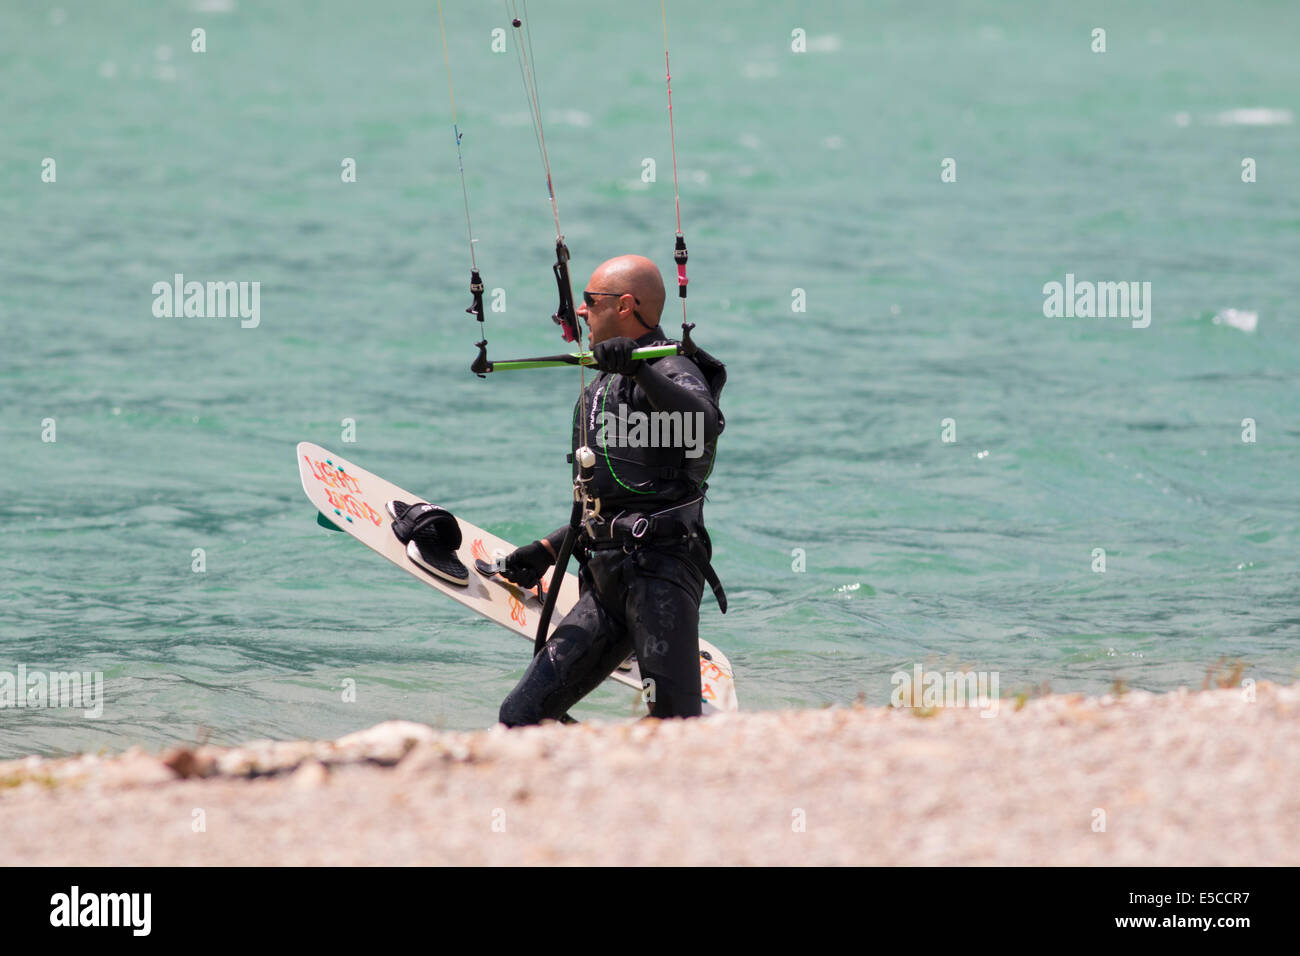 Lac DE SANTA CROCE, ITALIE - 13 juillet 2014 : Kitesurfer lance son cerf-volant dans le lac de Santa Croce Banque D'Images